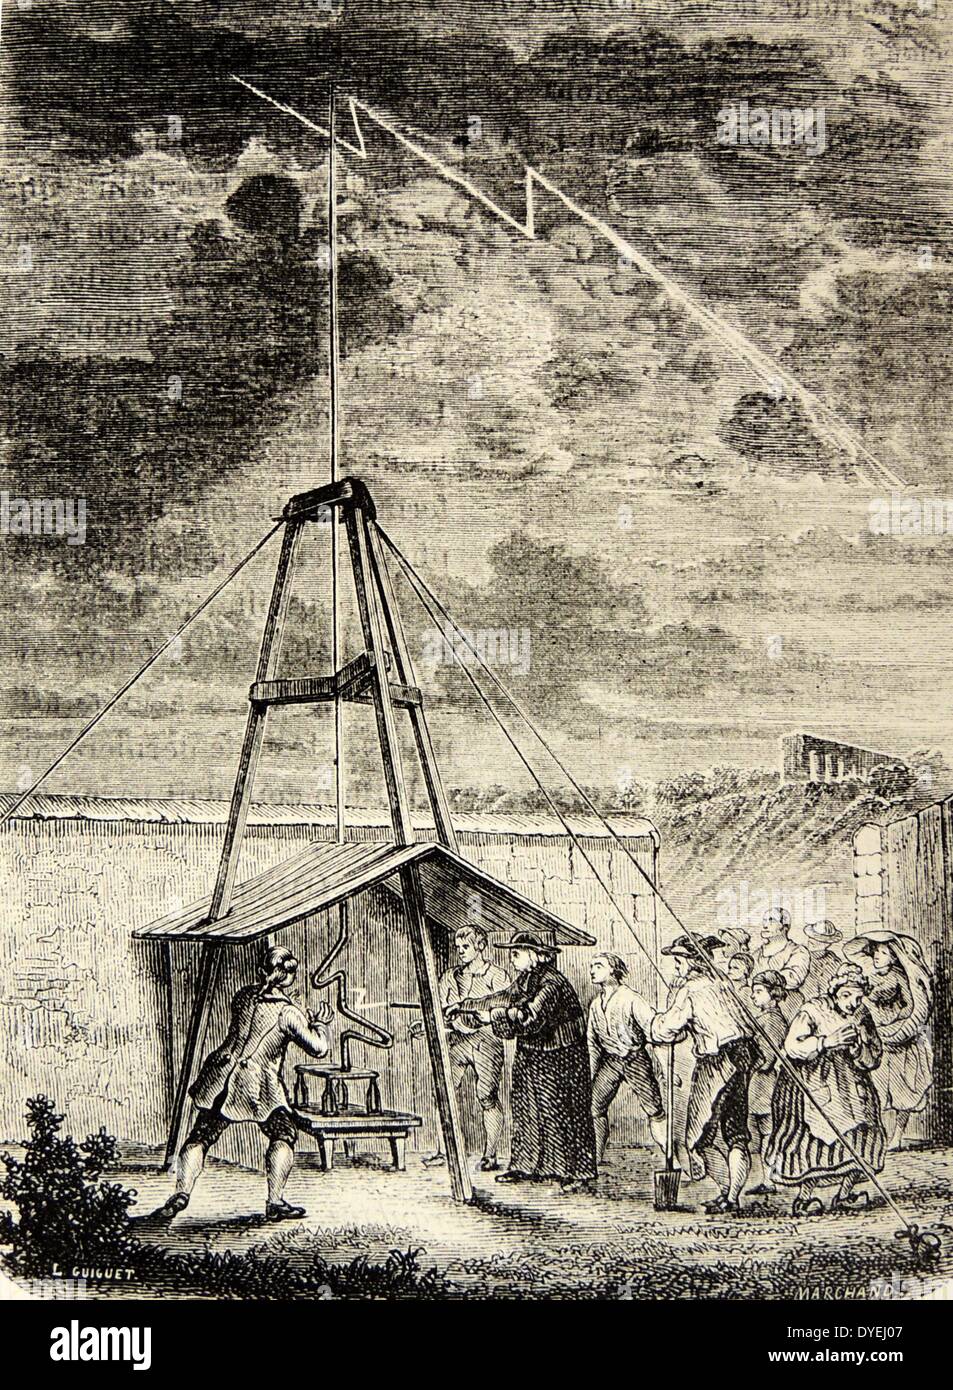 Thomas Dalibard (1803-1779), botanico francese, dimostrando la natura elettrica del fulmine 10 maggio 1752, precedente Franklin's kite esperimento. È stato tuttavia Franklin gli scritti che viene richiesto Dalibard's esperimento. Incisione, Parigi, 1870. Foto Stock